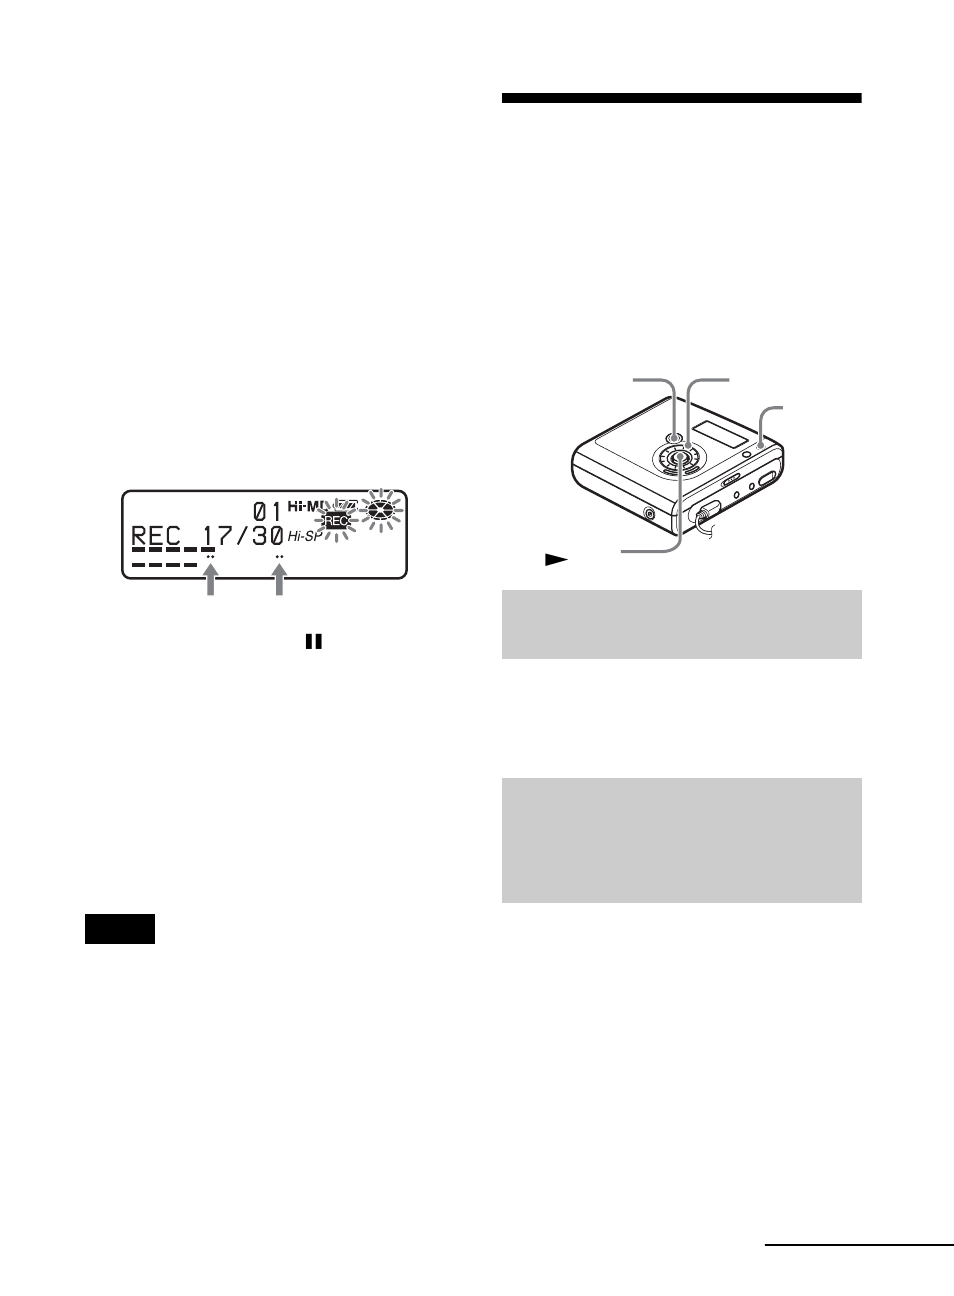 Aggiunta manuale dei contrassegni di brano | Sony MZ-NHF800 Manuale d'uso | Pagina 39 / 136